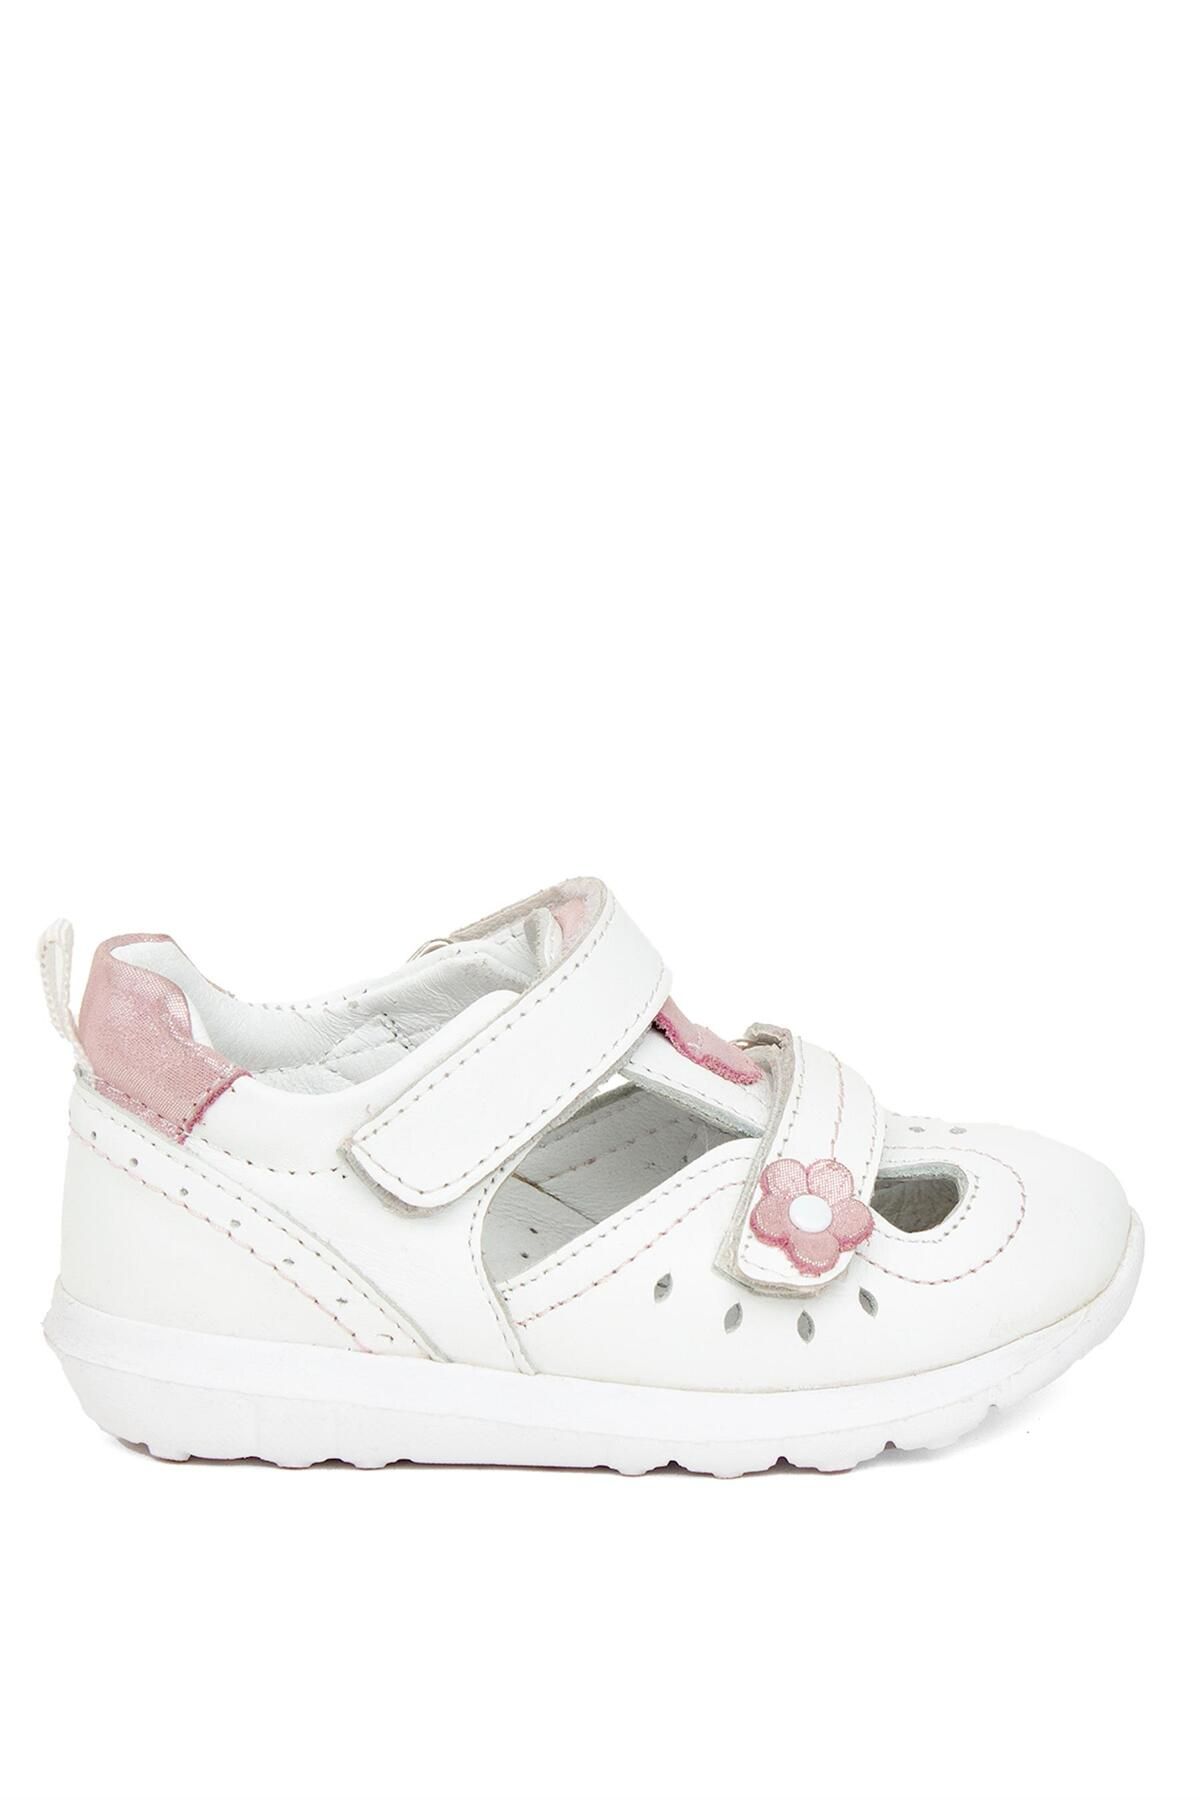 Minican T B 10 Bebe Kız Çocuk Casual Ayakkabı Beyaz